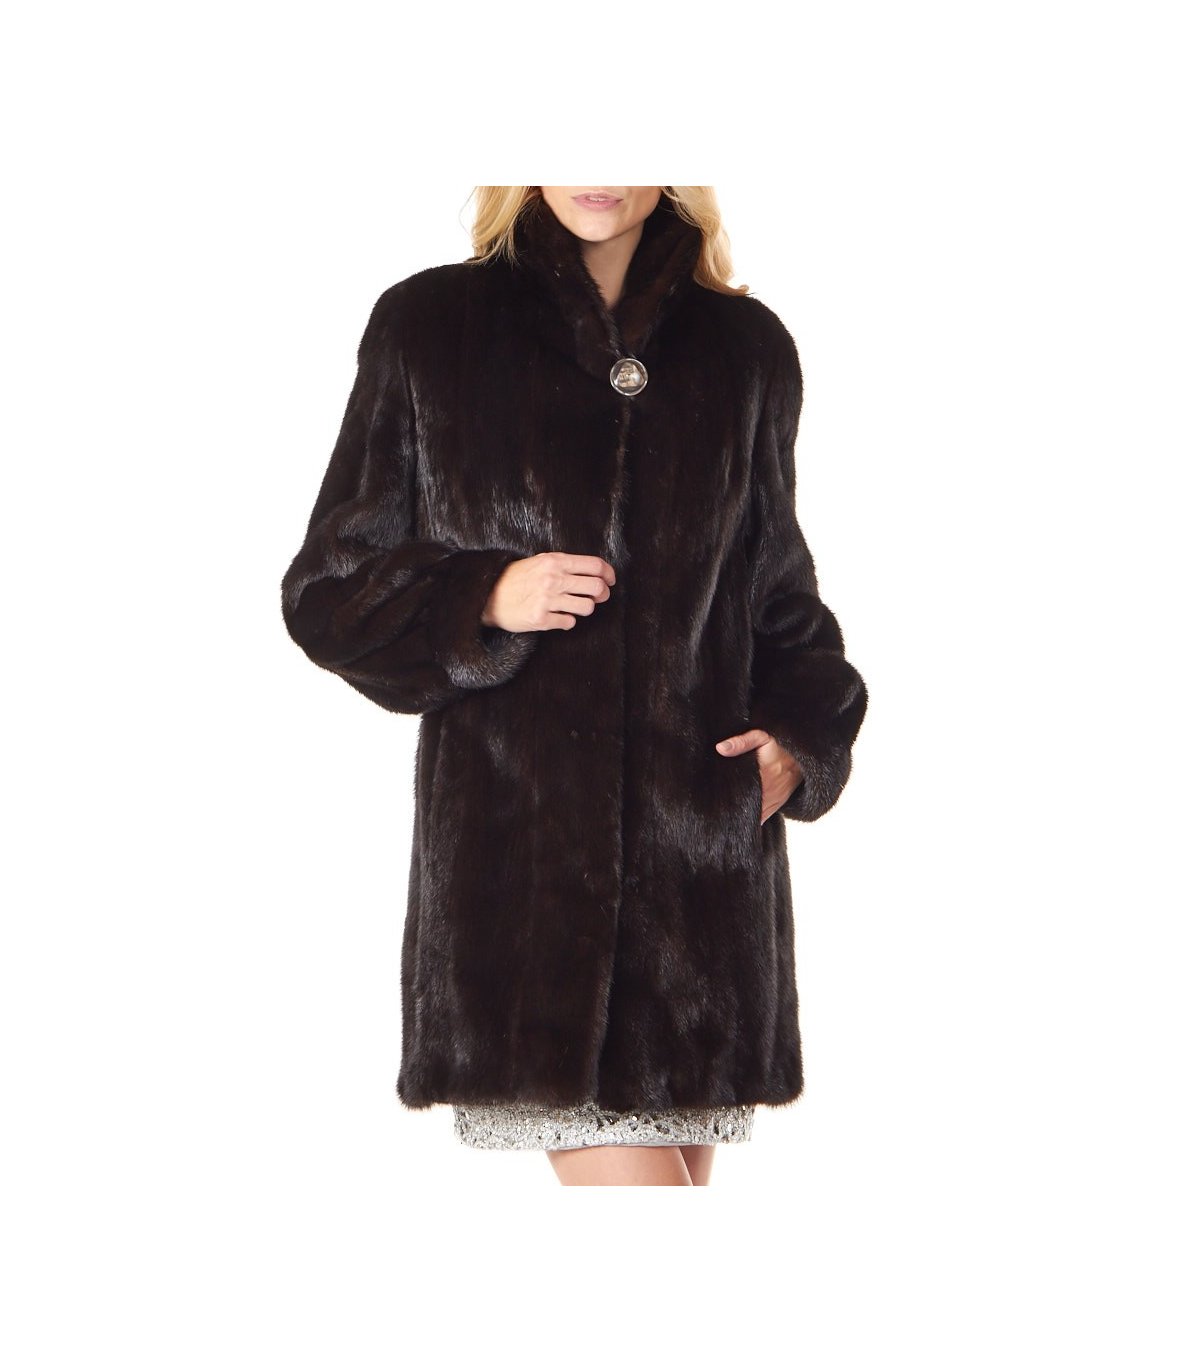 Elaine Classic 3/4 Length Mink Coat in Mahogany: FurSource.com